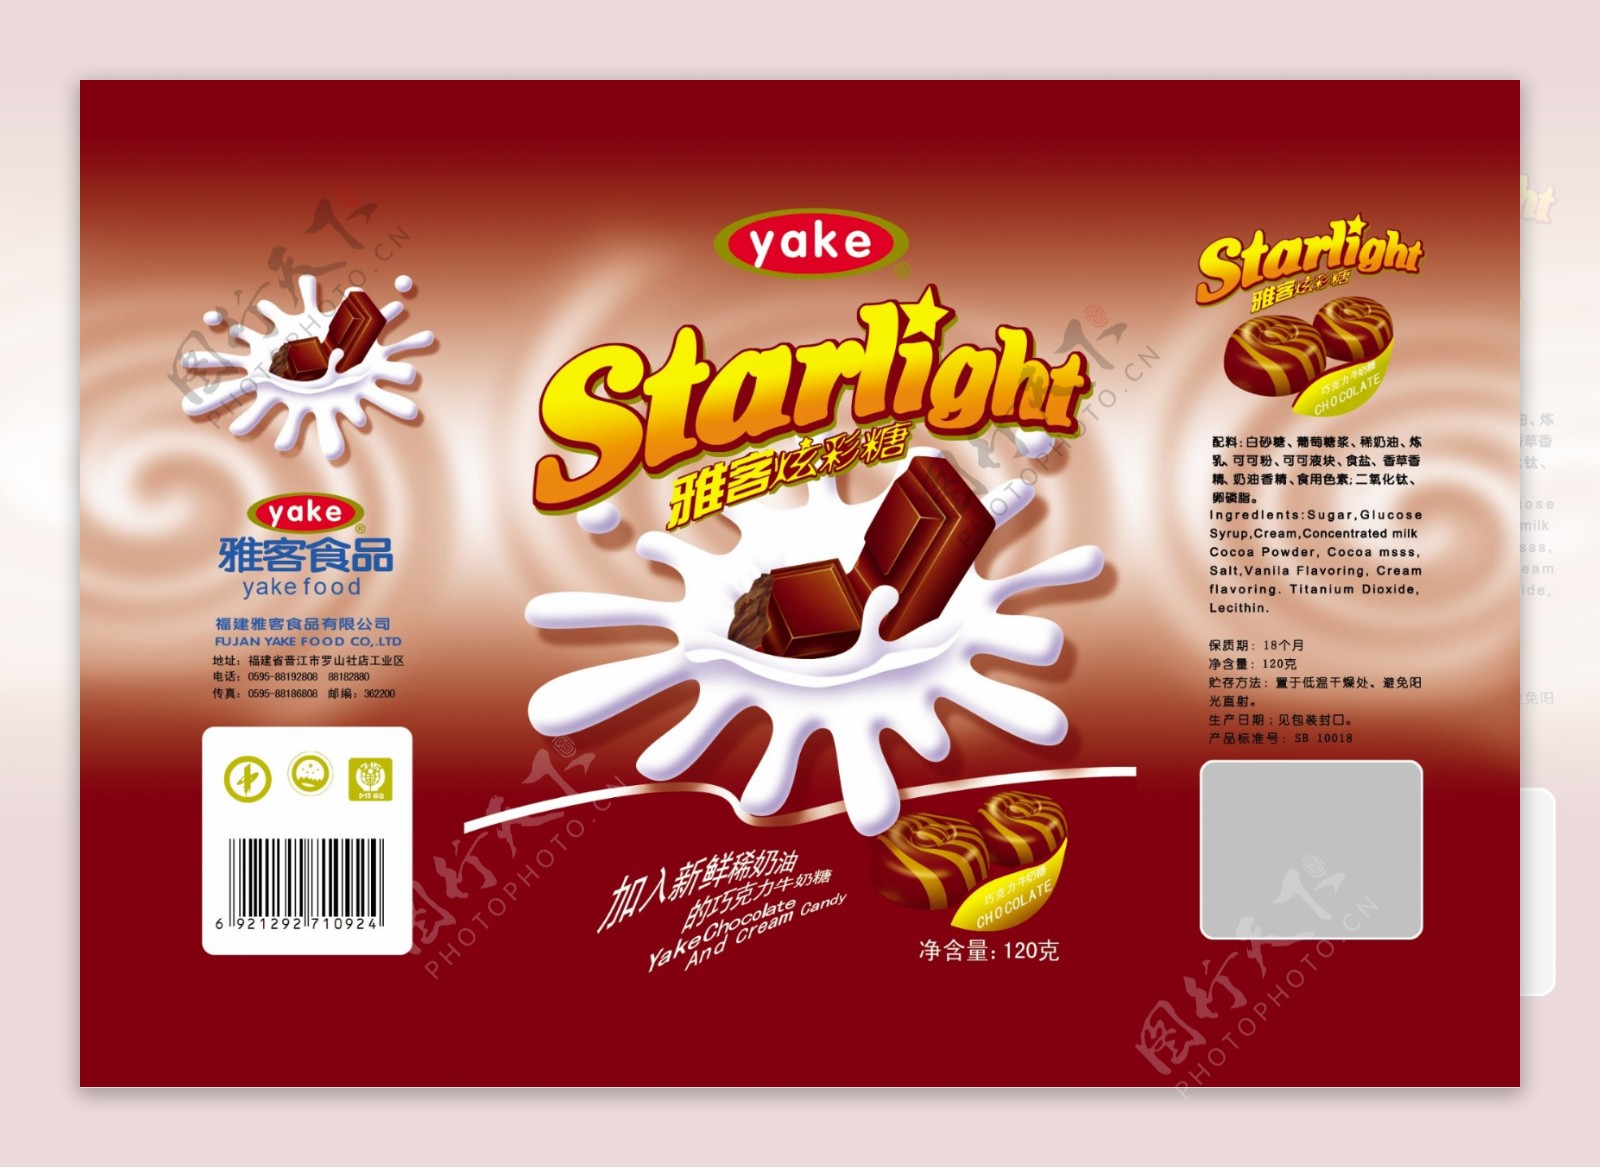 雅客炫彩糖巧克力牛奶糖包装图片